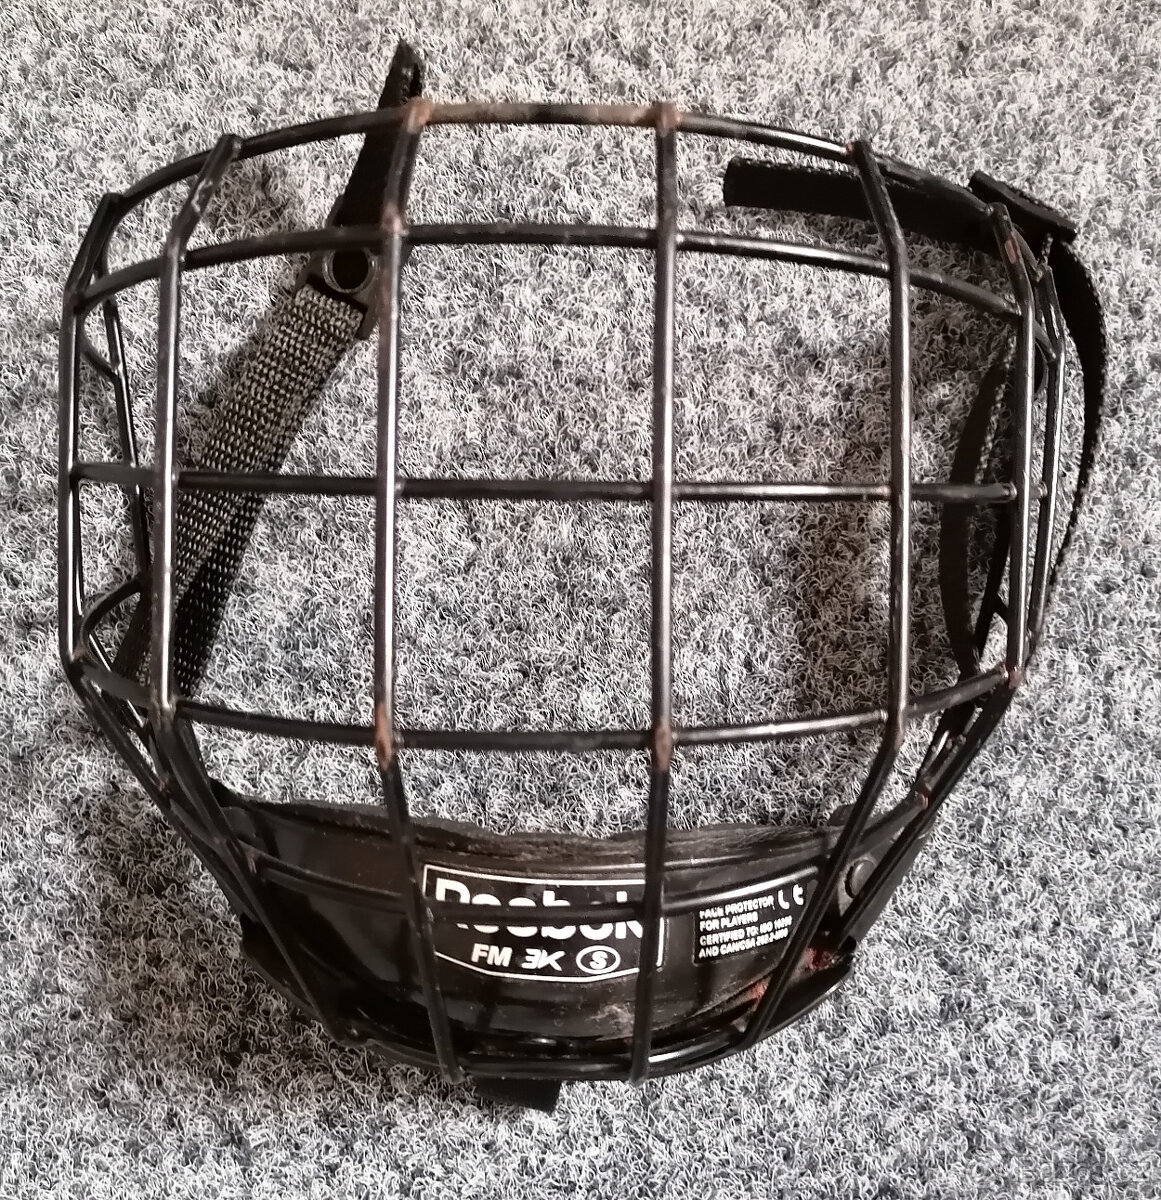 Košík na hokejovou helmu - Reebok FM 3K vel. S